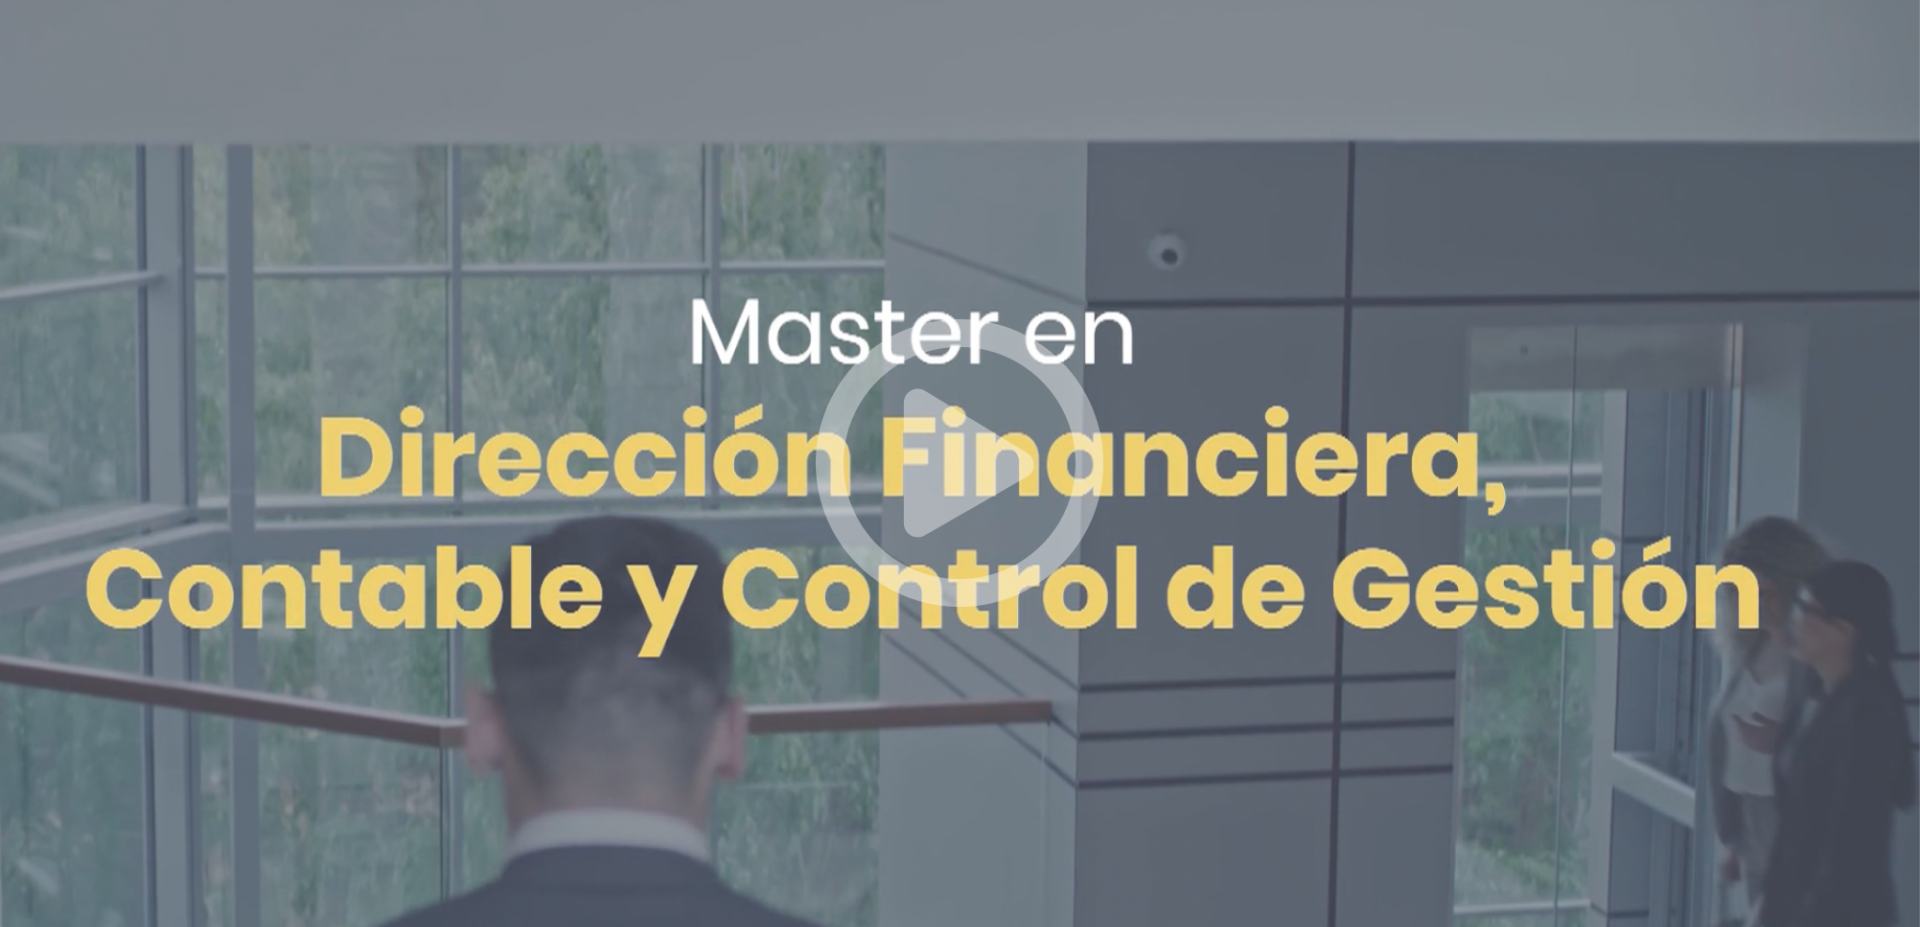 Master Financiera Image Video